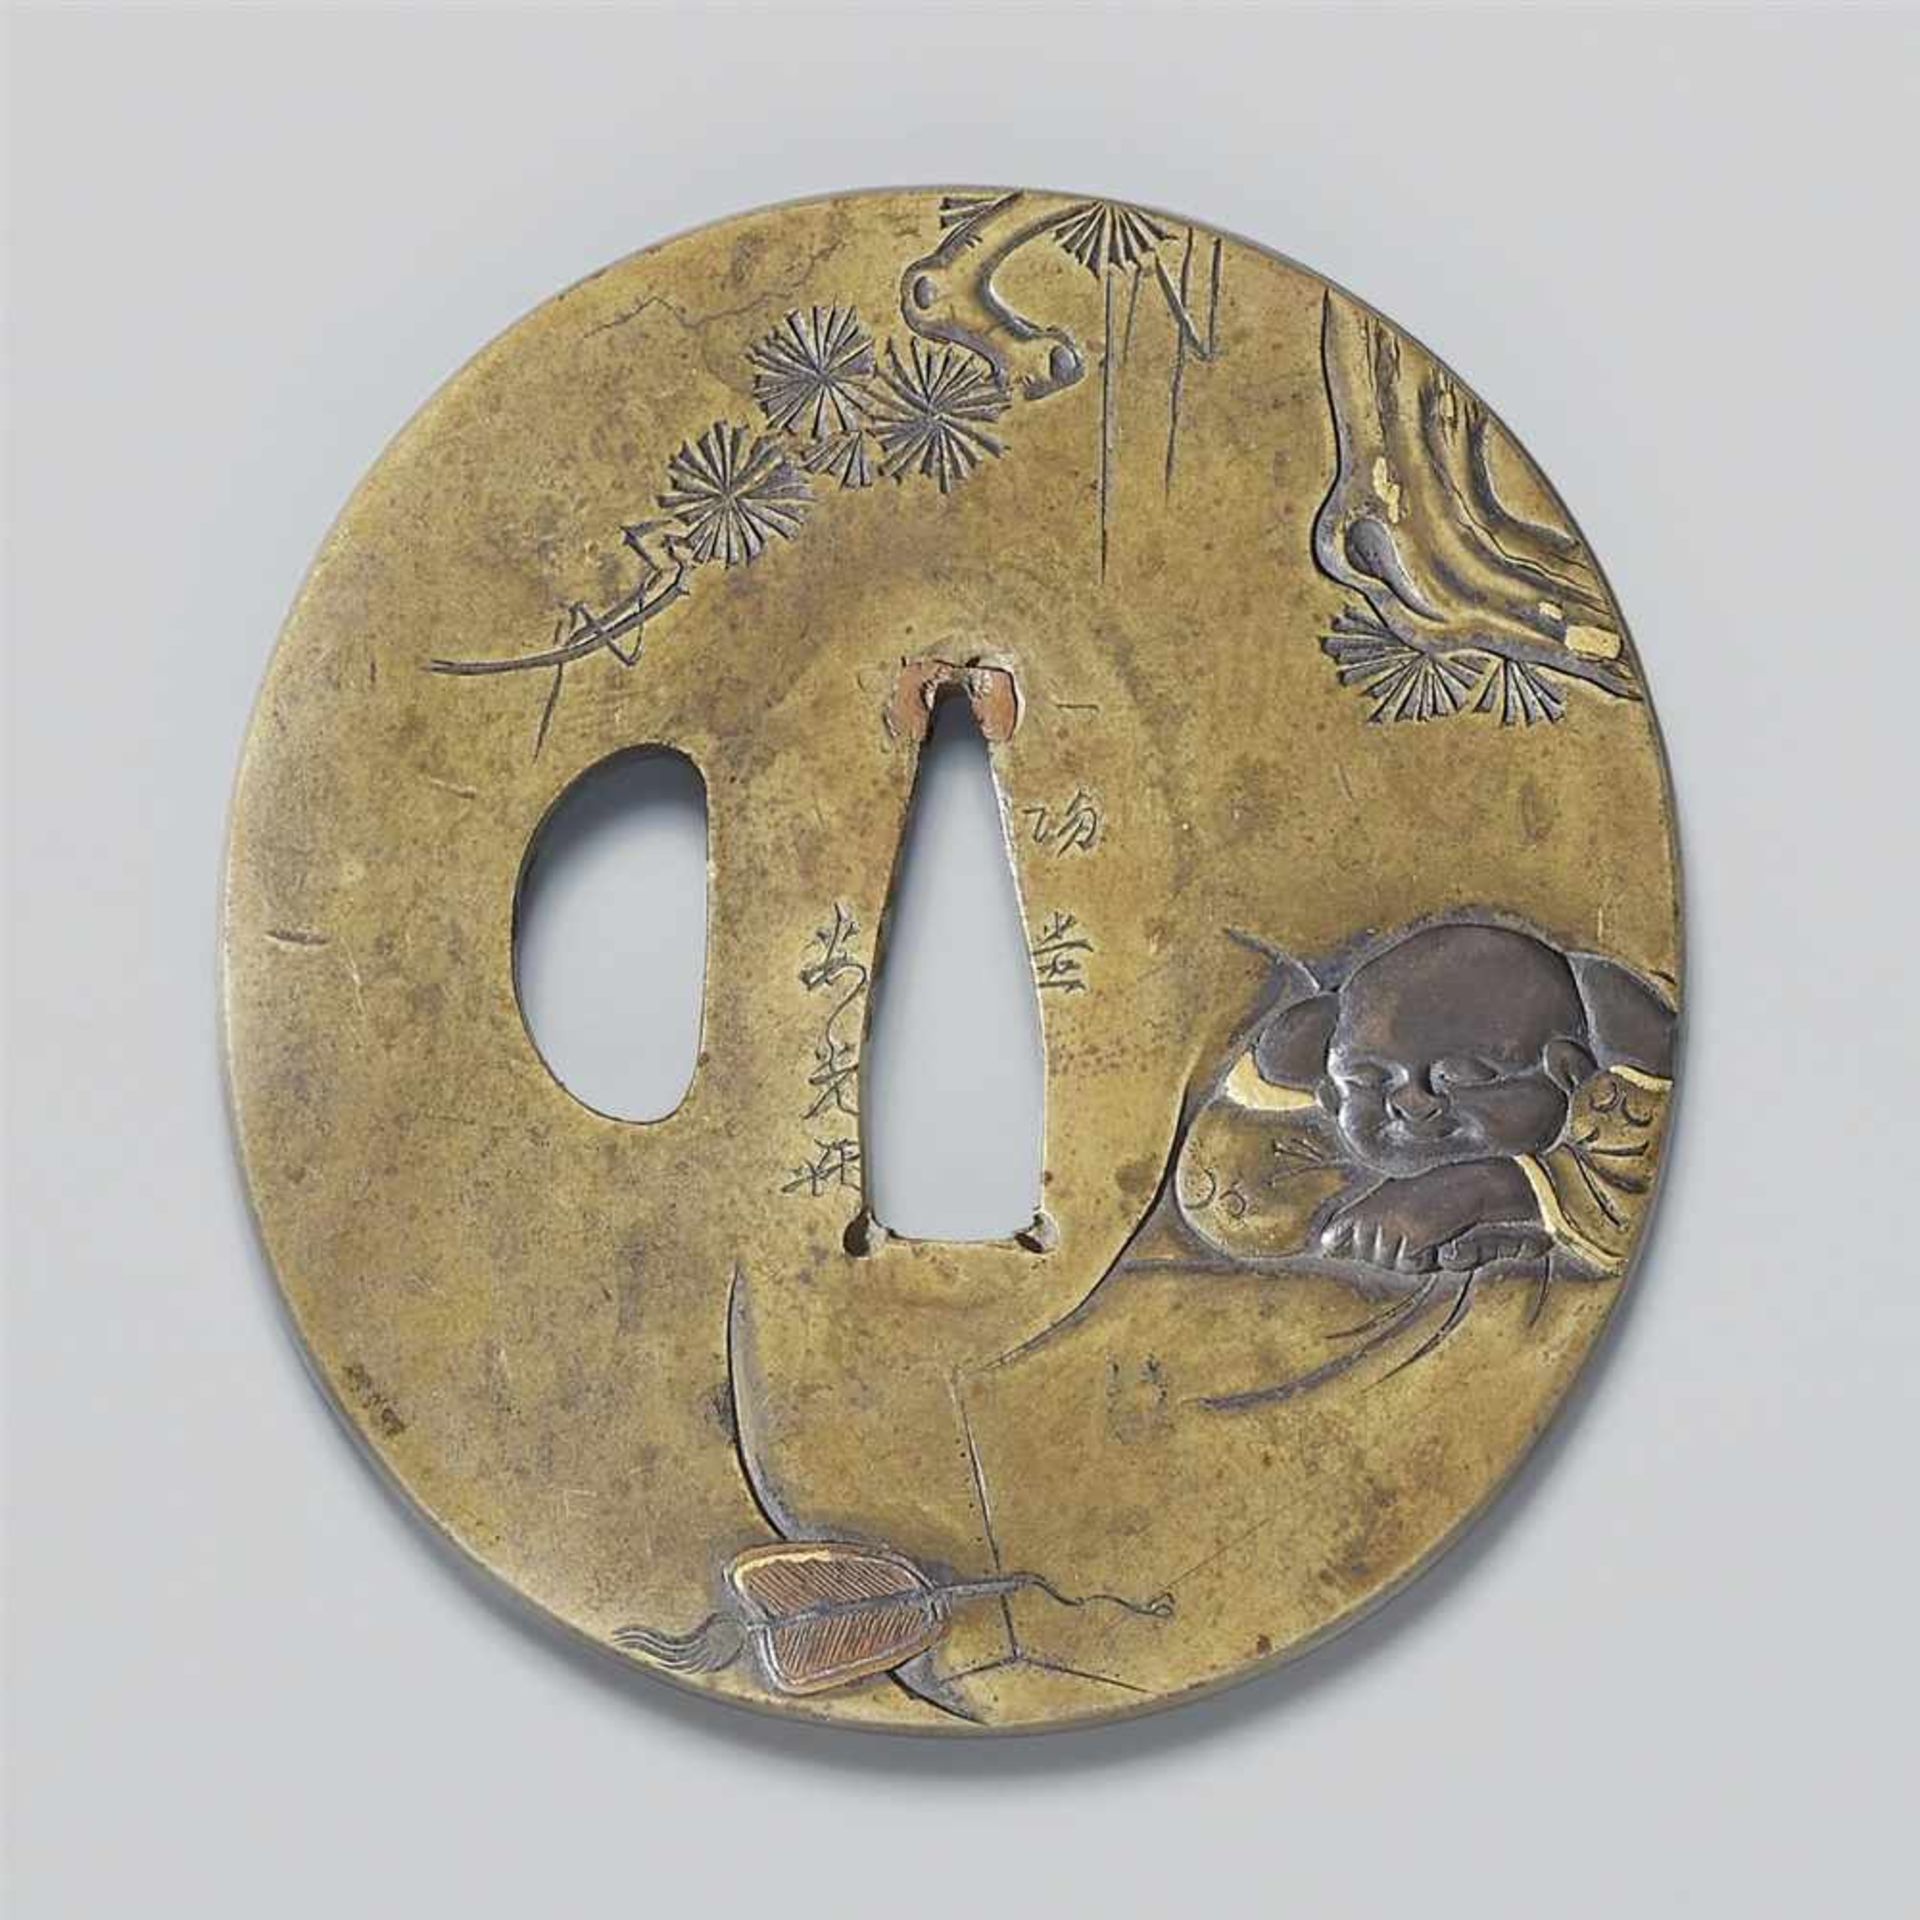 Zwei Weichmetall-tsuba. 19. Jh.a) Oval. Sentoku. In Relief mit farbigen Einlagen Hotei, der über